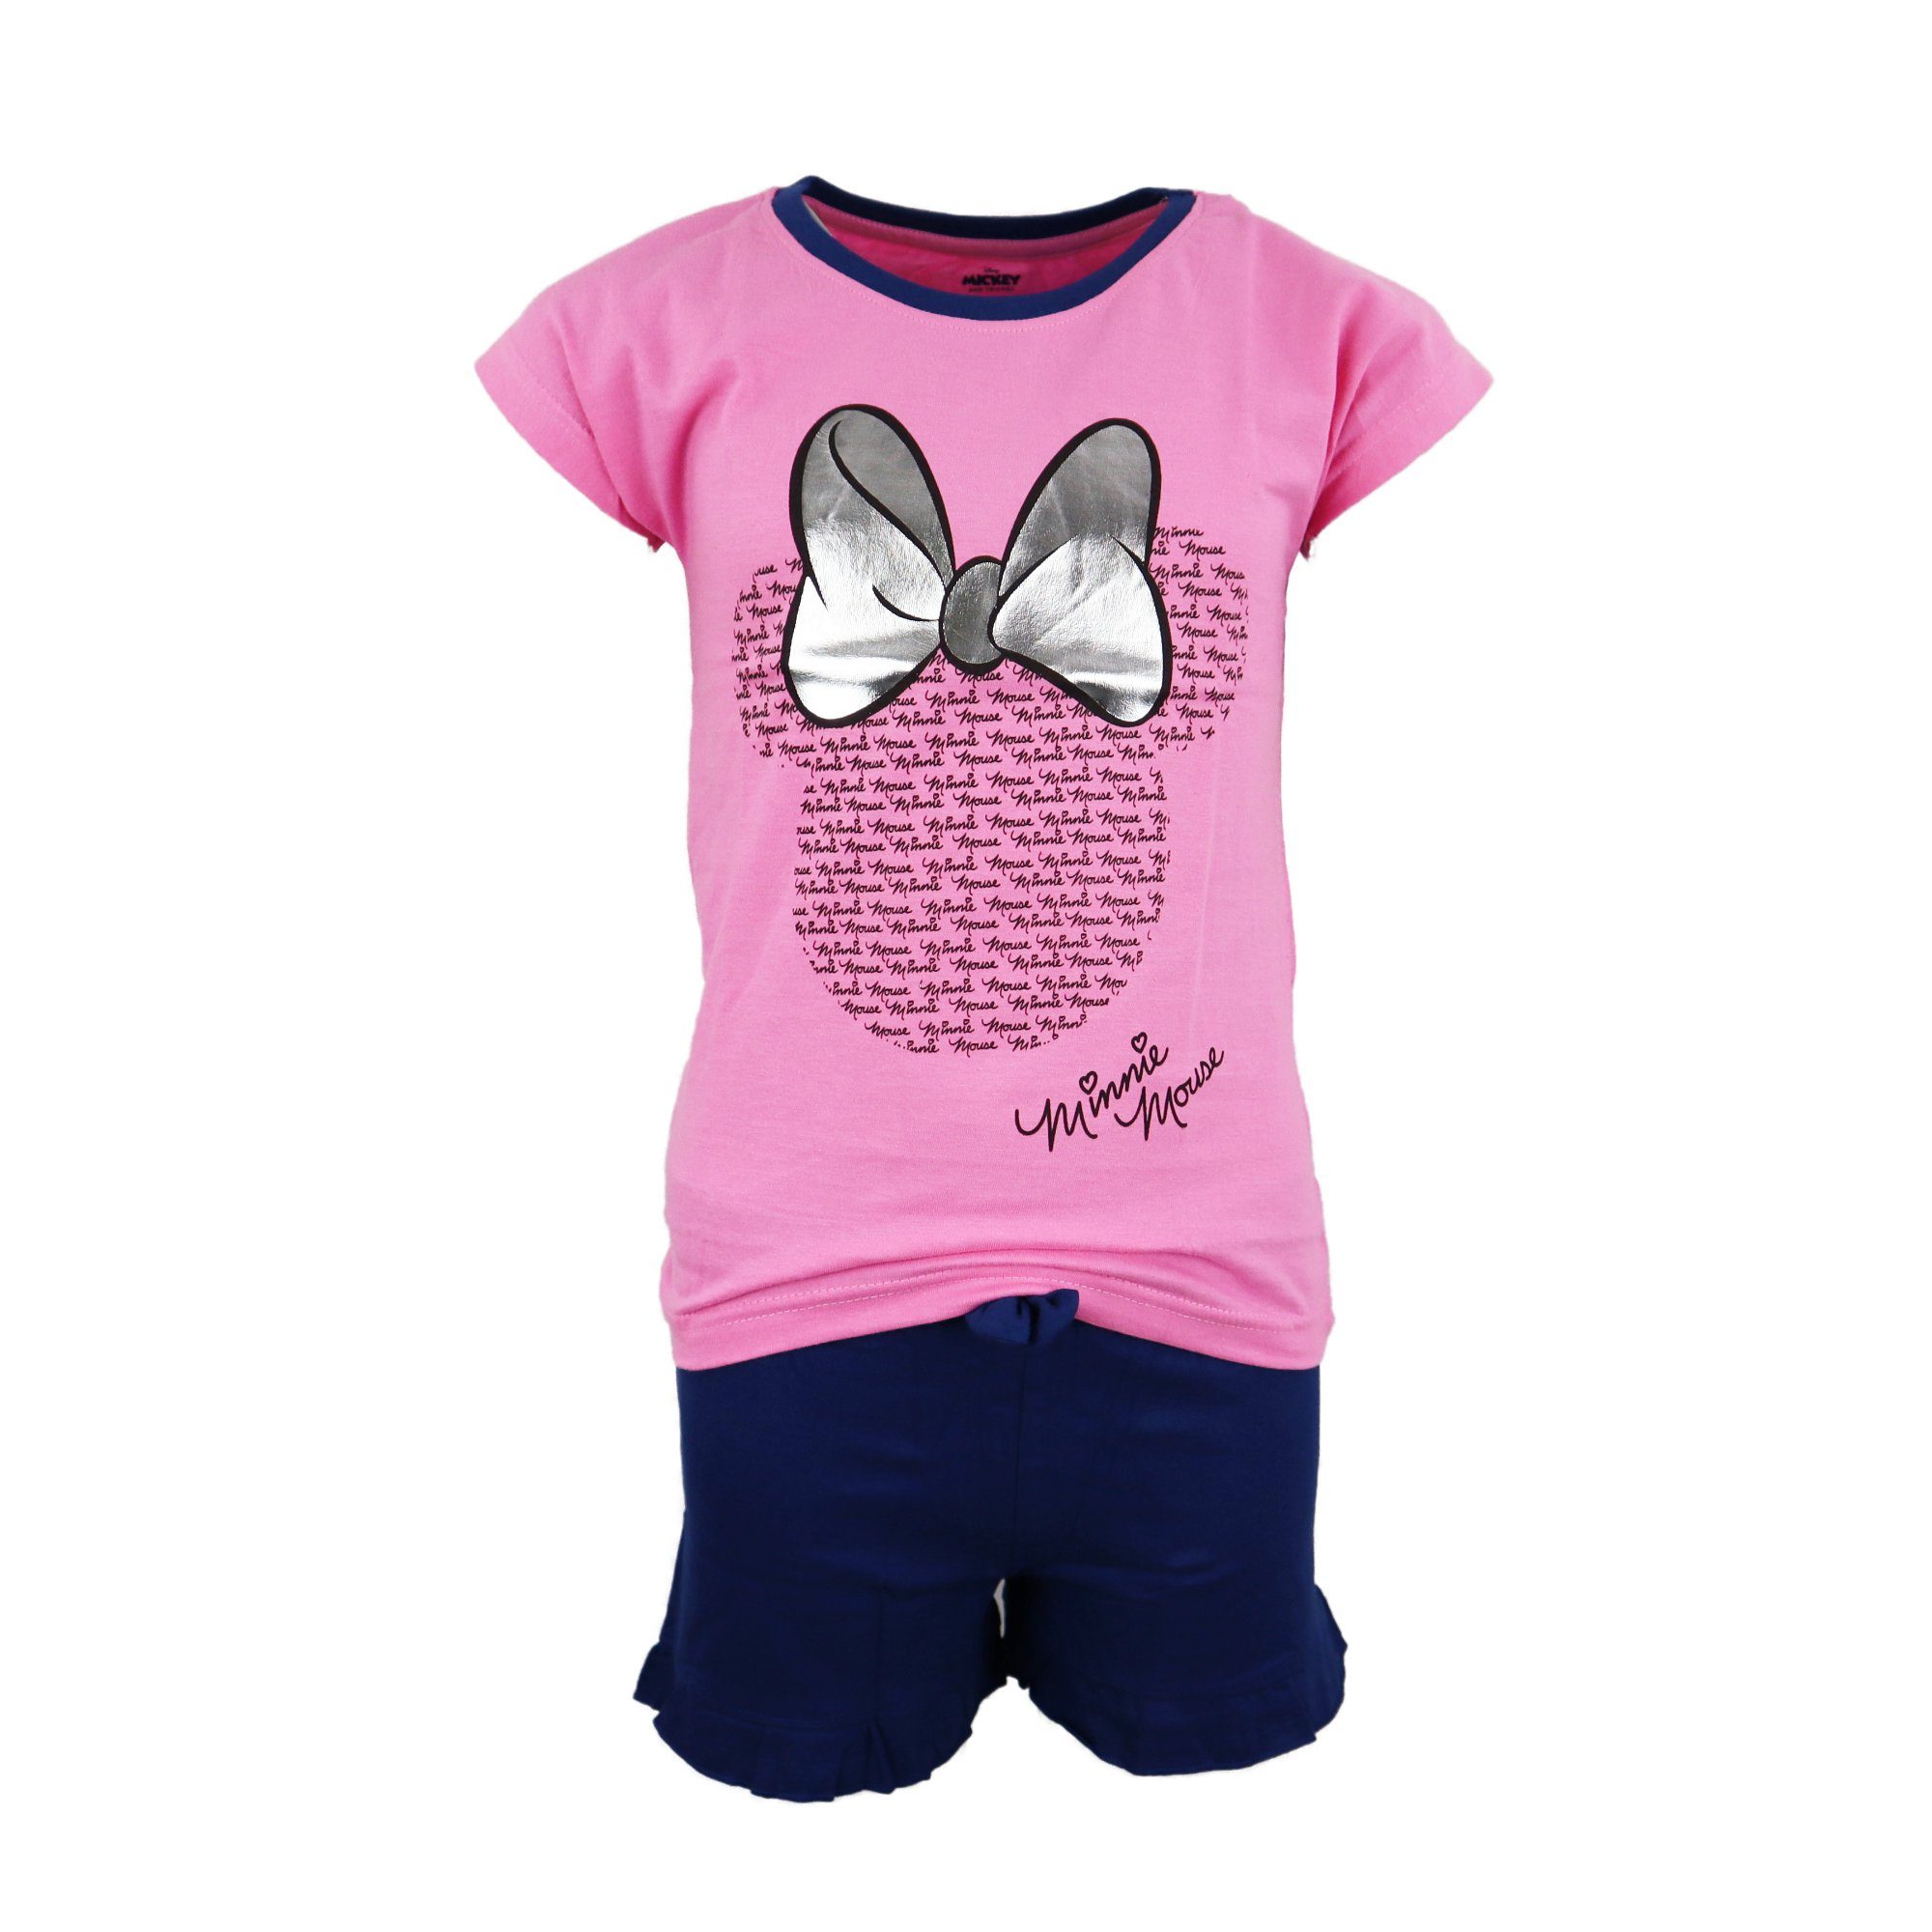 Disney Minnie Mouse Schlafanzug Mädchen bis Pyjama 100% Baumwolle Rosa 164, 134 Kinder Jugend kurzarm Gr